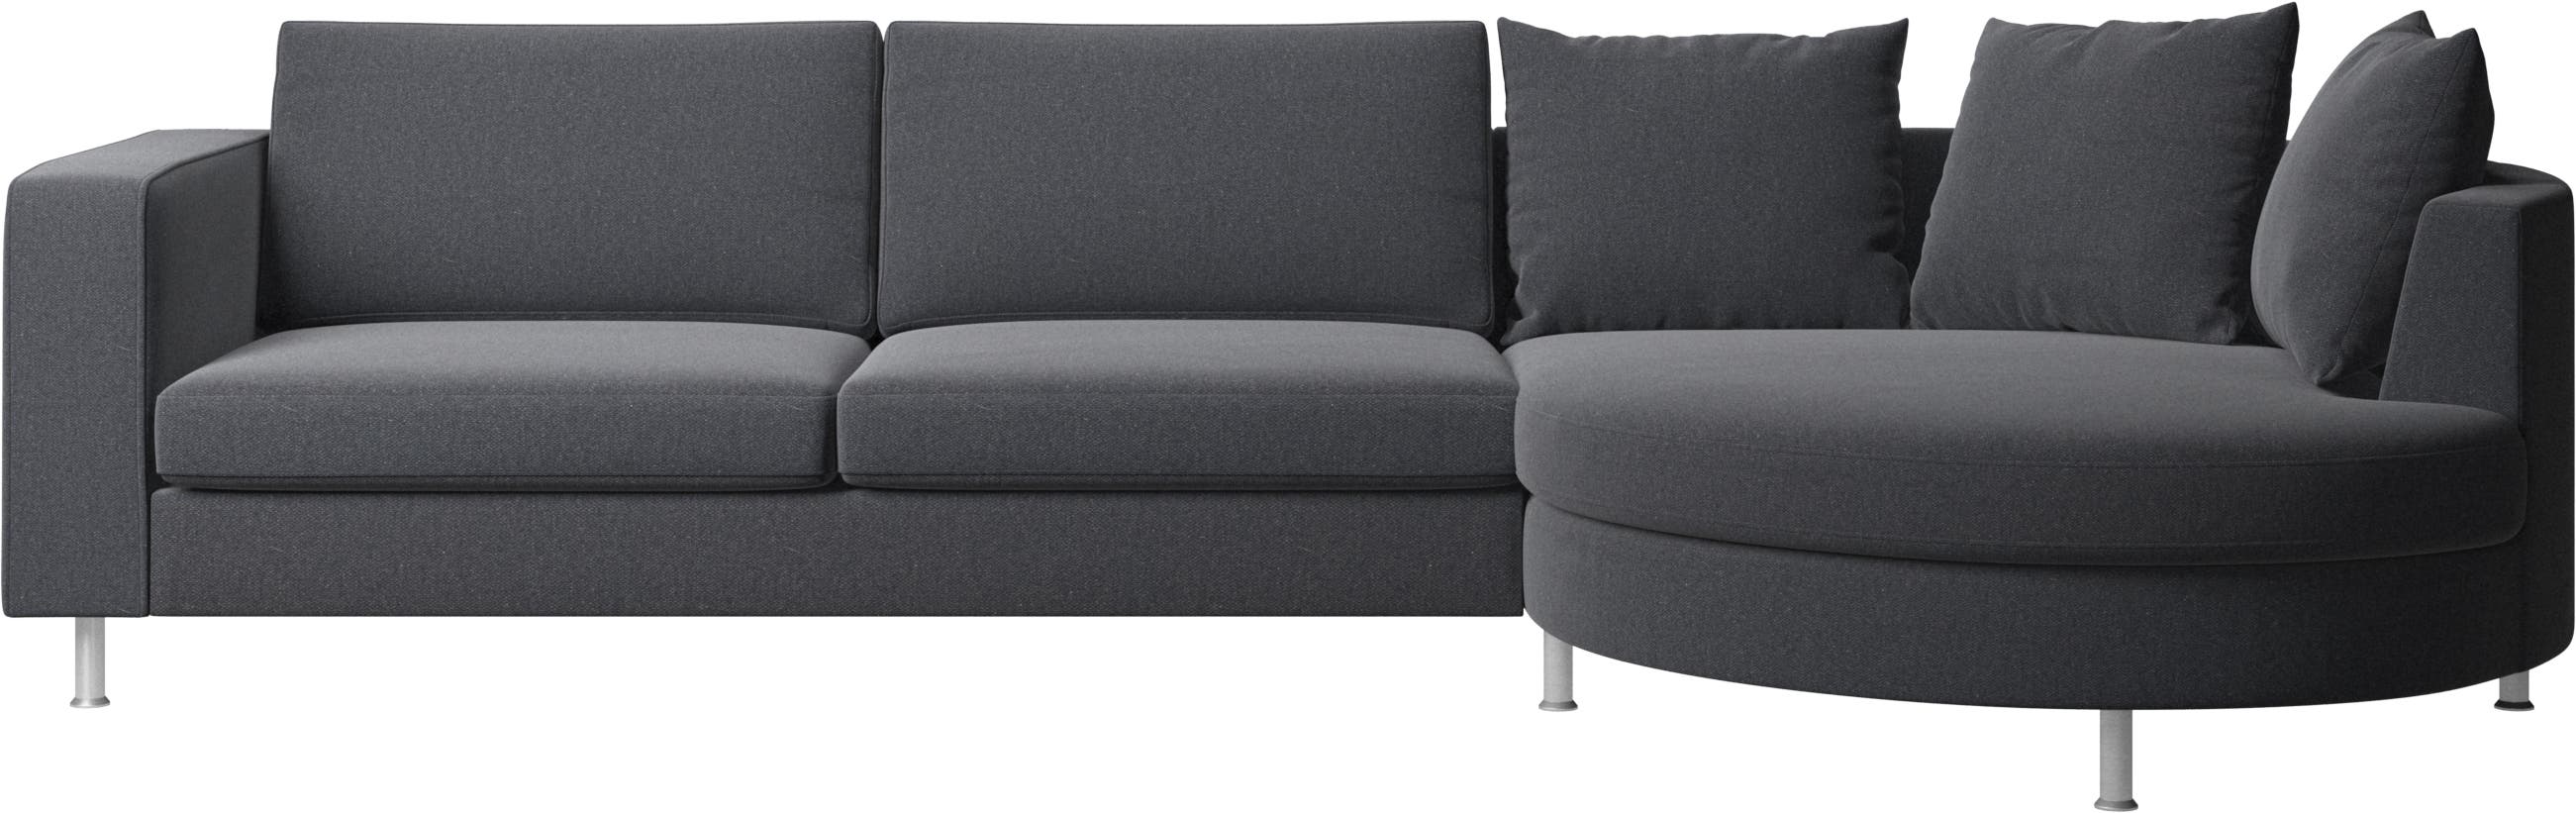 Indivi sofa with round resting unit